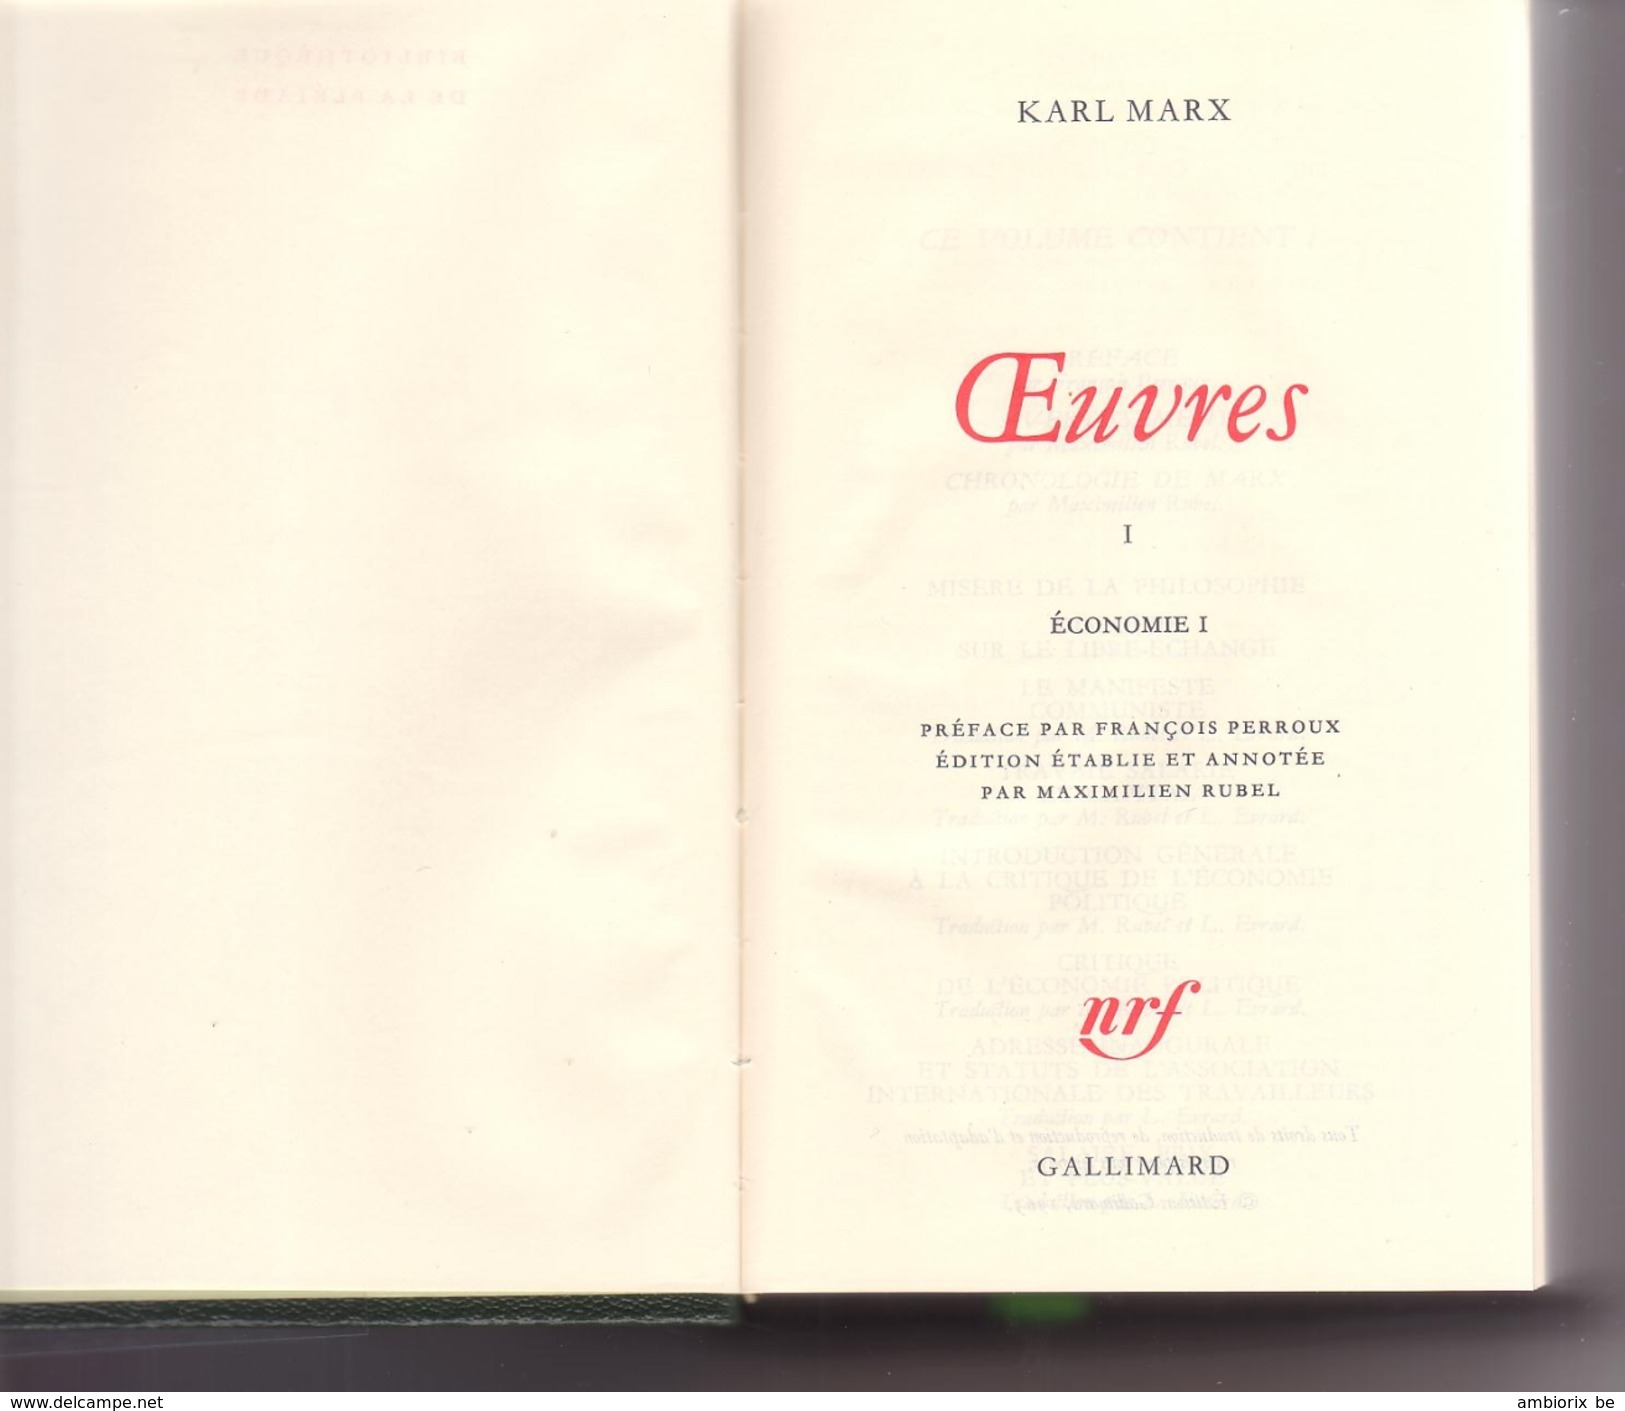 Encyclopédie De La Pleiade : Karl Marx Oeuvres I Economie I - La Pléiade